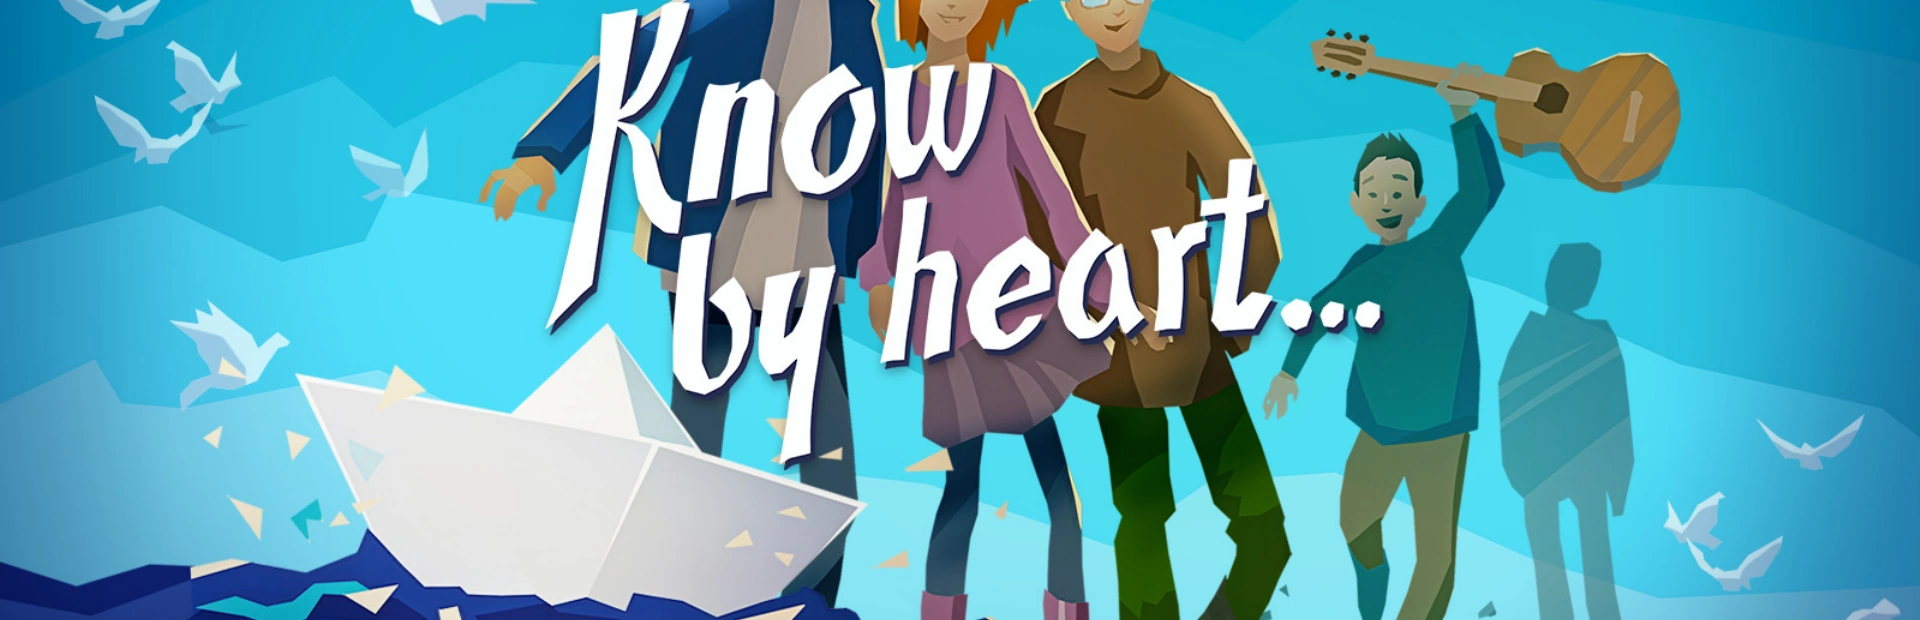 دانلود بازی Know by heart برای کامپیوتر | گیمباتو